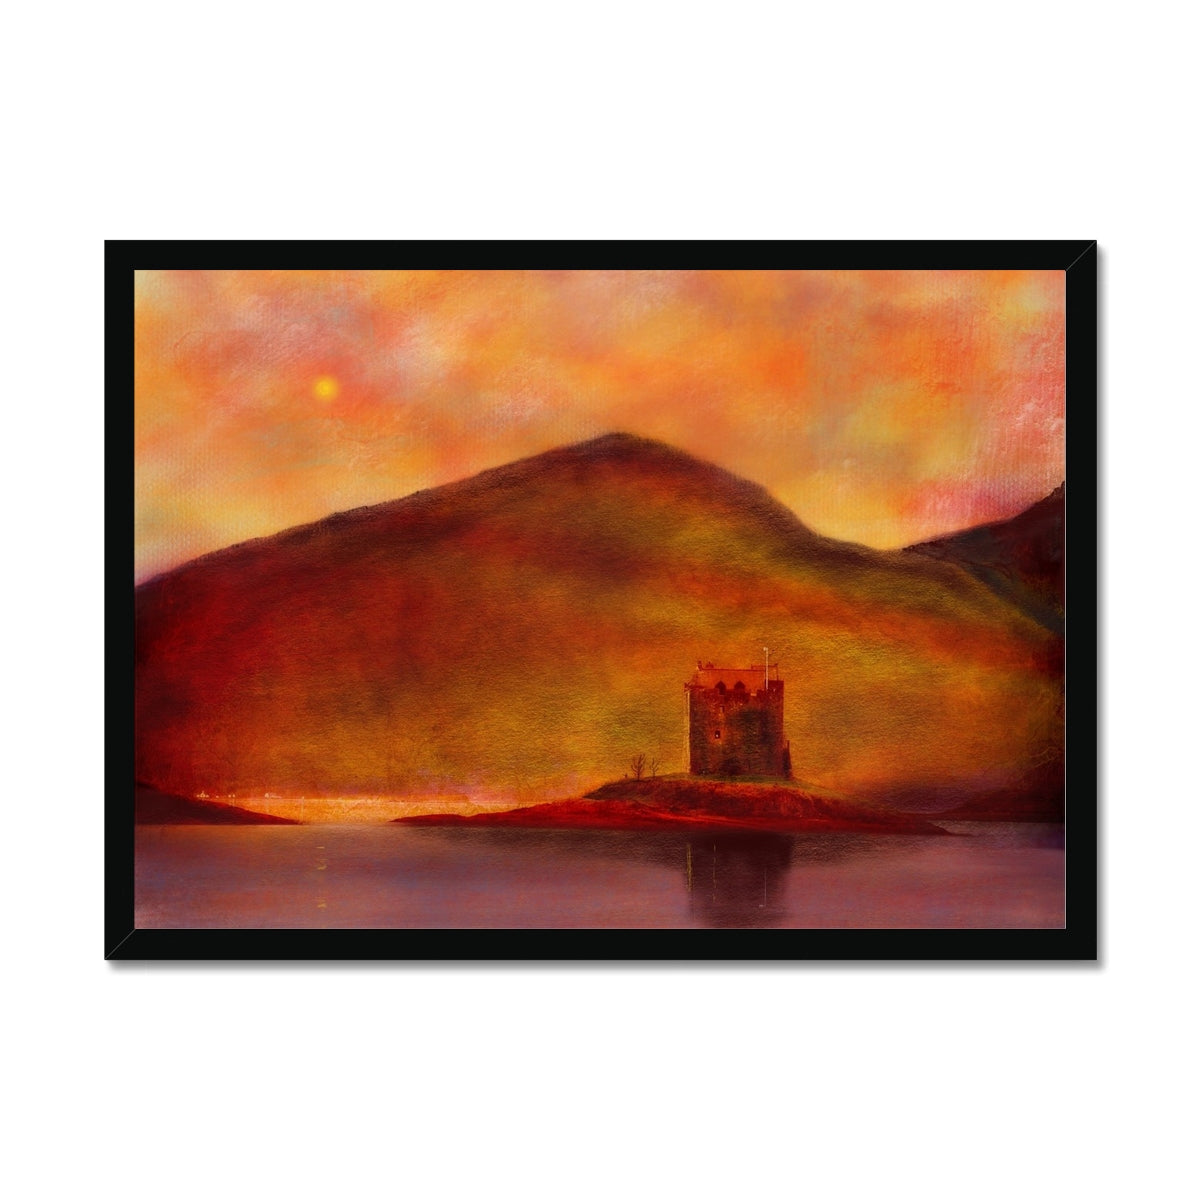 Castle Stalker Sunset Painting | Framed Prints From Scotland-Framed Prints-Historic & Iconic Scotland Art Gallery-A2 Landscape-Black Frame-Paintings, Prints, Homeware, Art Gifts From Scotland By Scottish Artist Kevin Hunter